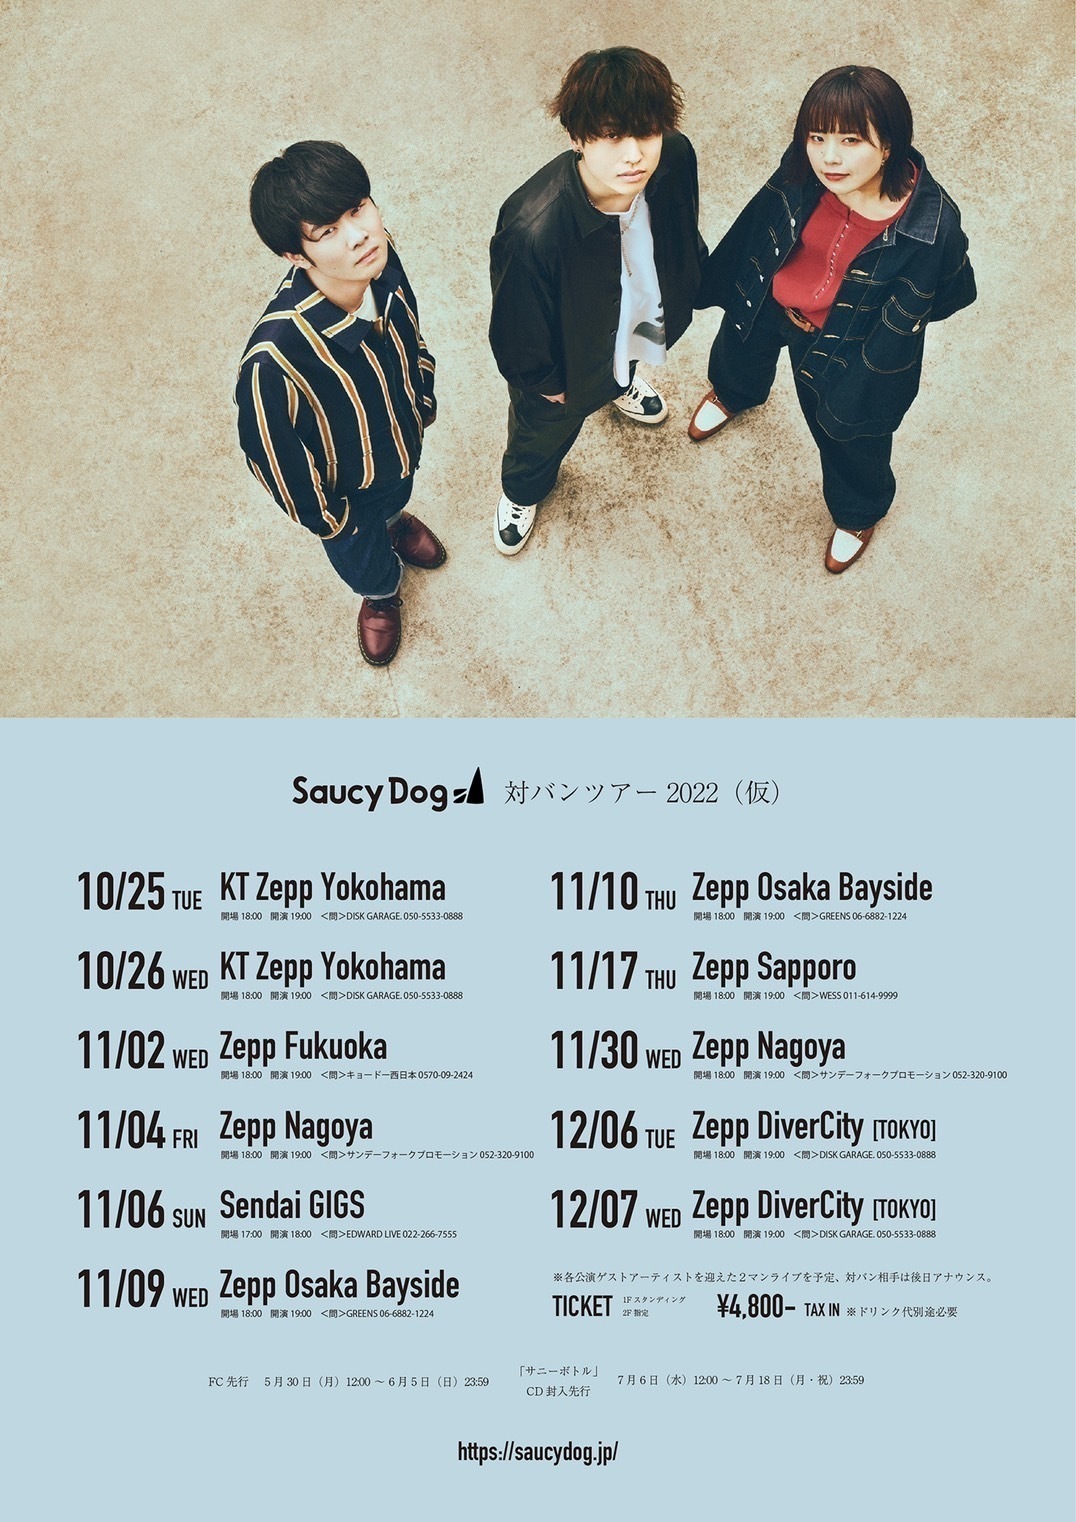 Saucy Dog、10月より全国対バンツアー開催。“優しさに溢れた世界で”MVプレミア公開も